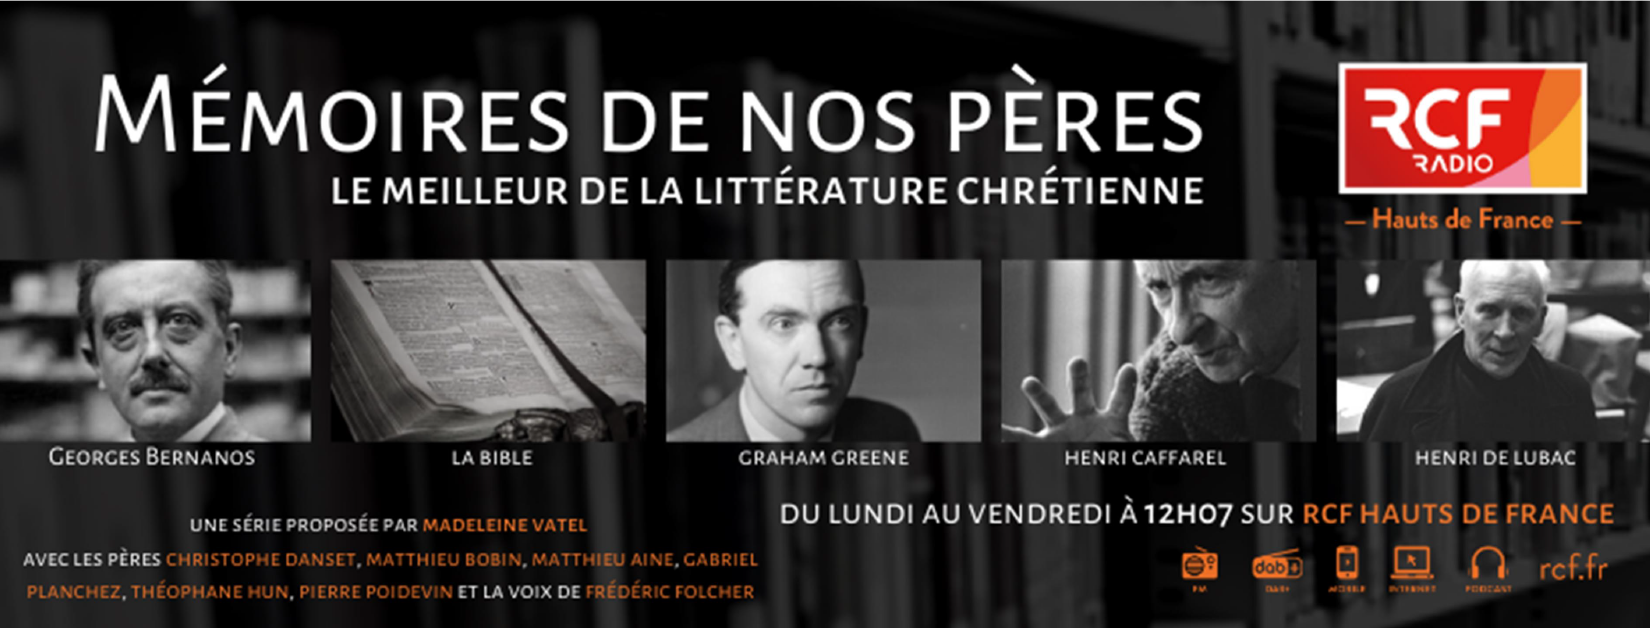 RCF Hauts-de-France lance une nouvelle série consacrée à la littérature chrétienne 